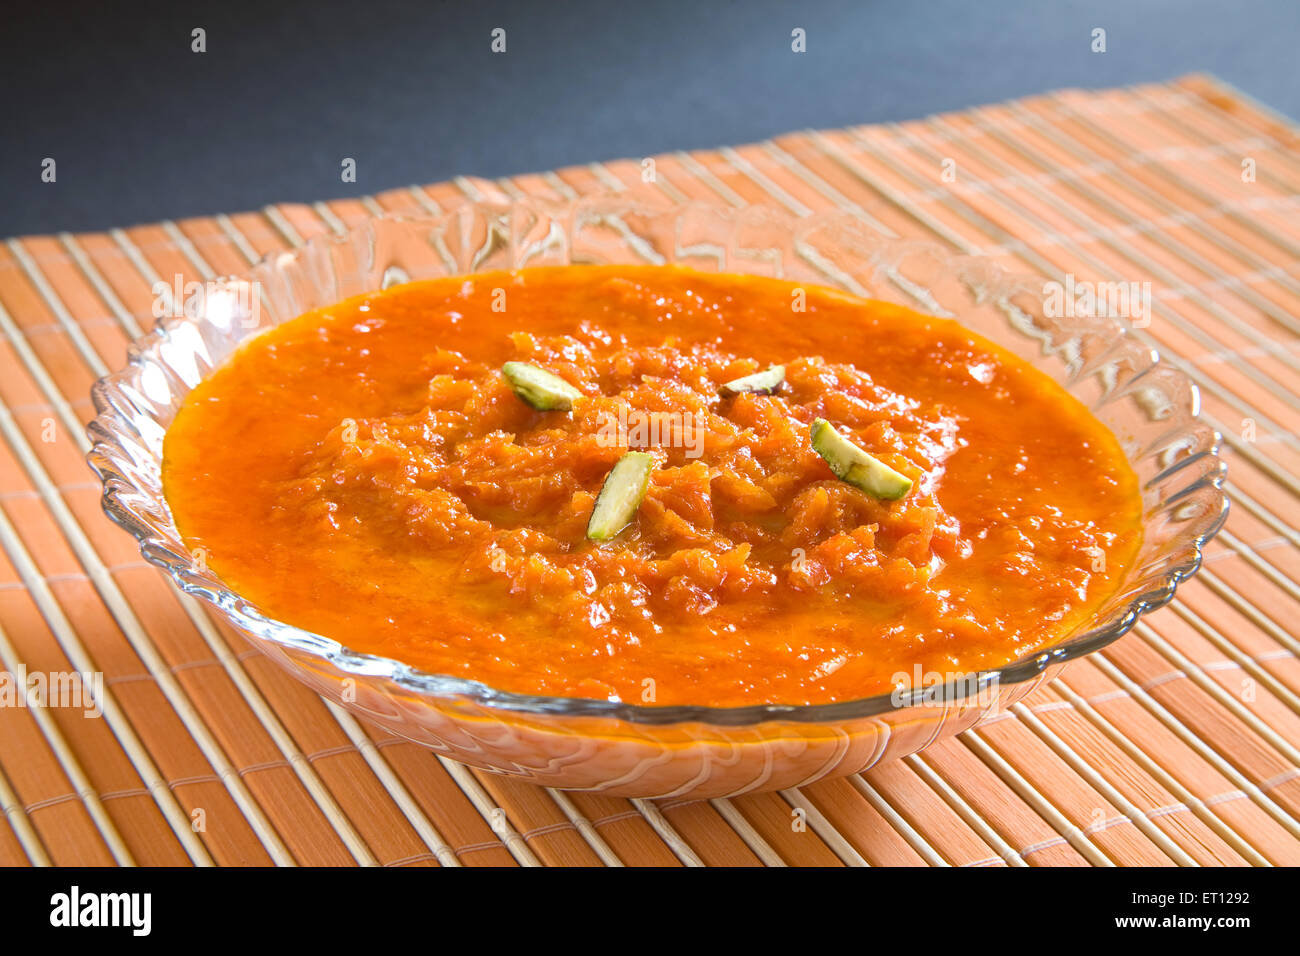 Il cibo indiano ; dolce con carote pudding guarnire con pistacchio servita nel recipiente 19 Febbraio 2010 Foto Stock